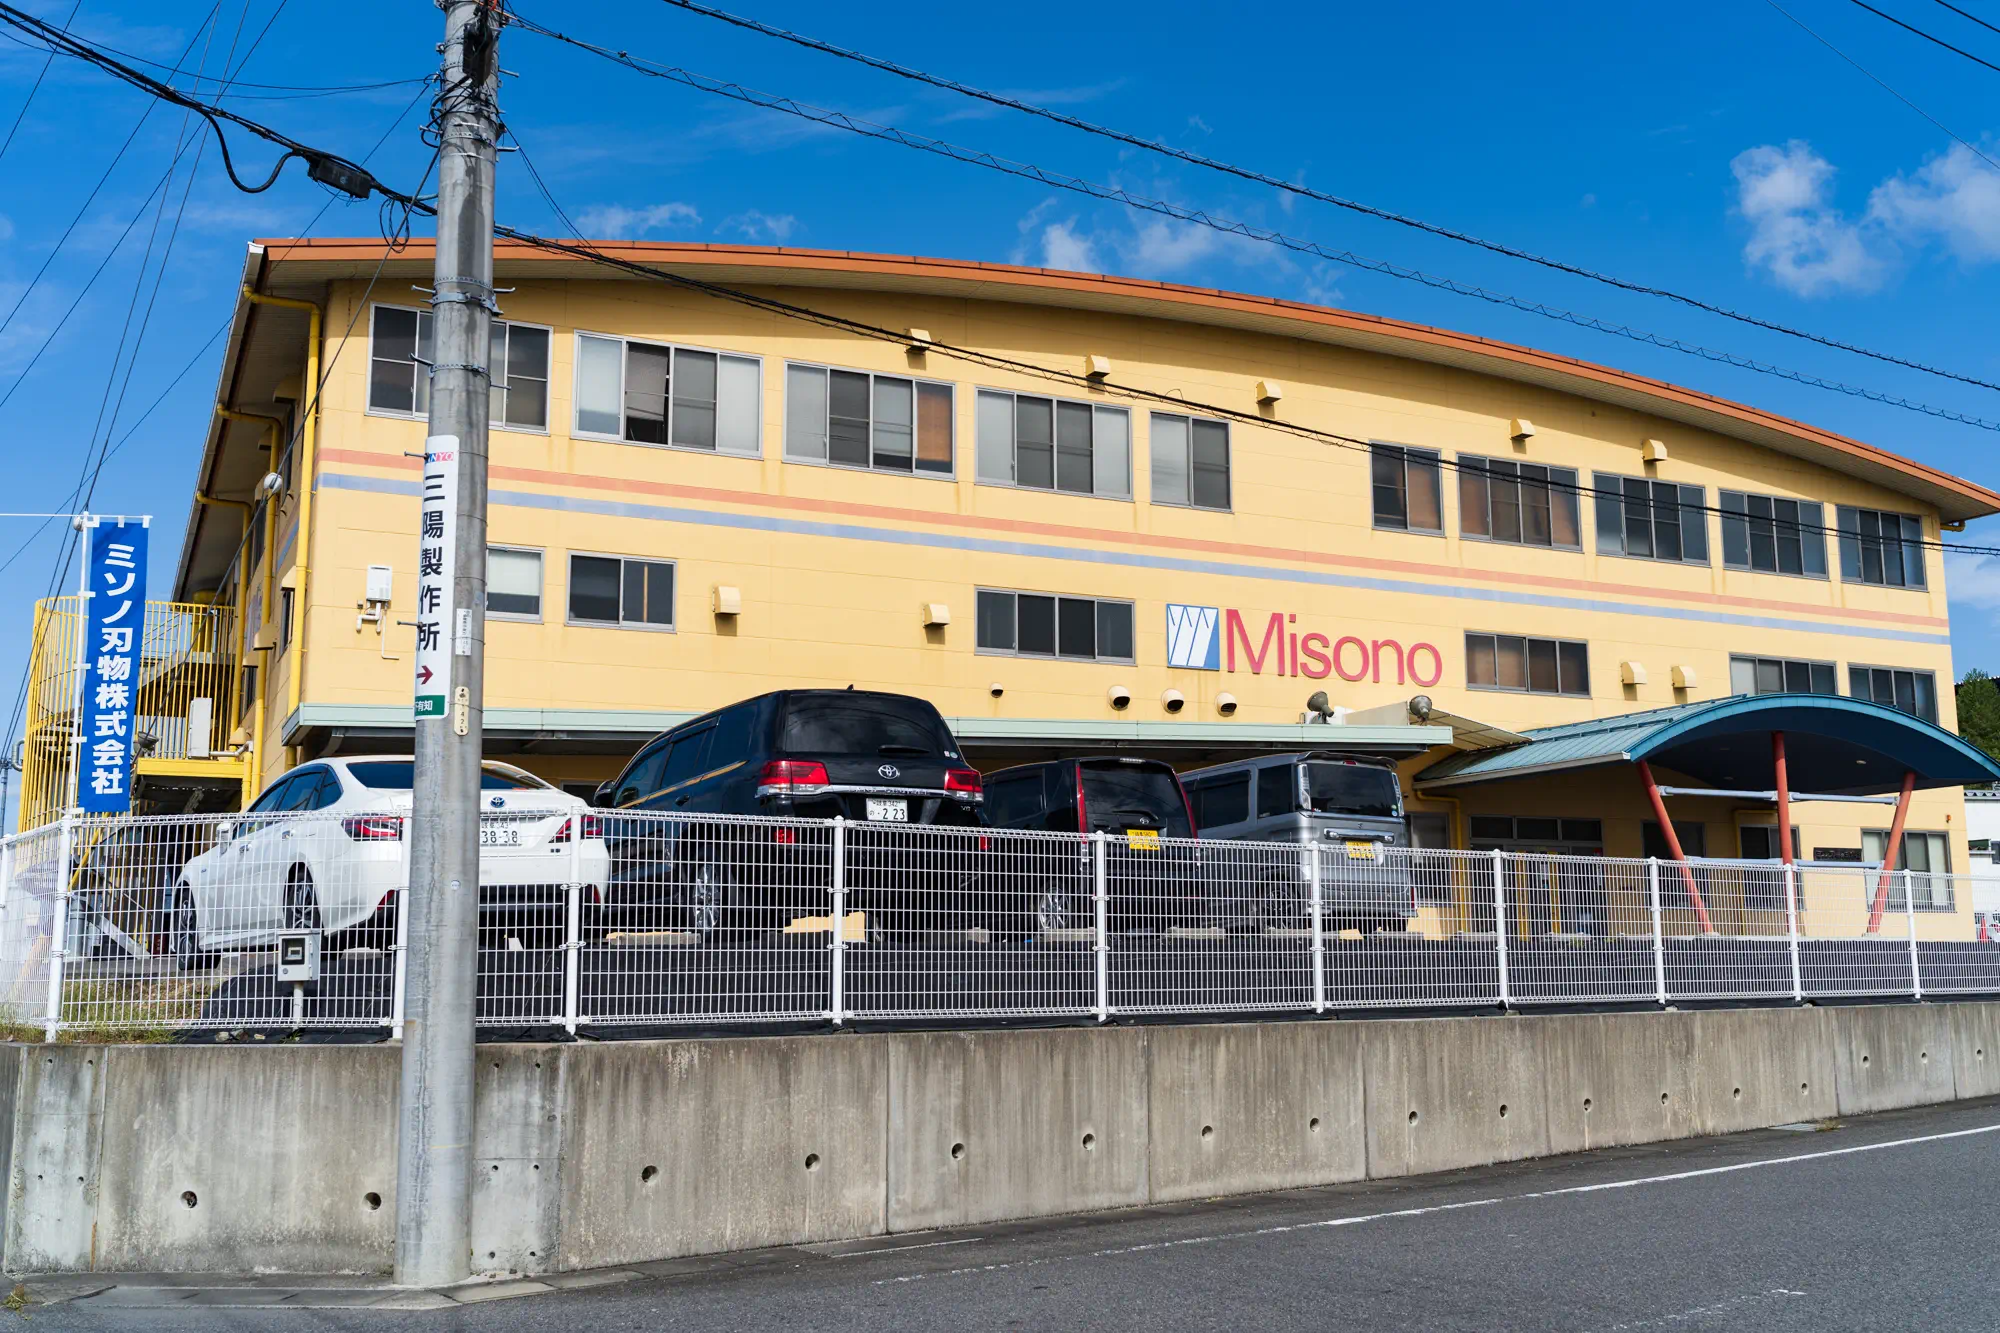 ミソノ刃物の本社工場遠景。黄色い3階建ての社屋と駐車場。手前に青色の社名入りののぼりが立っている